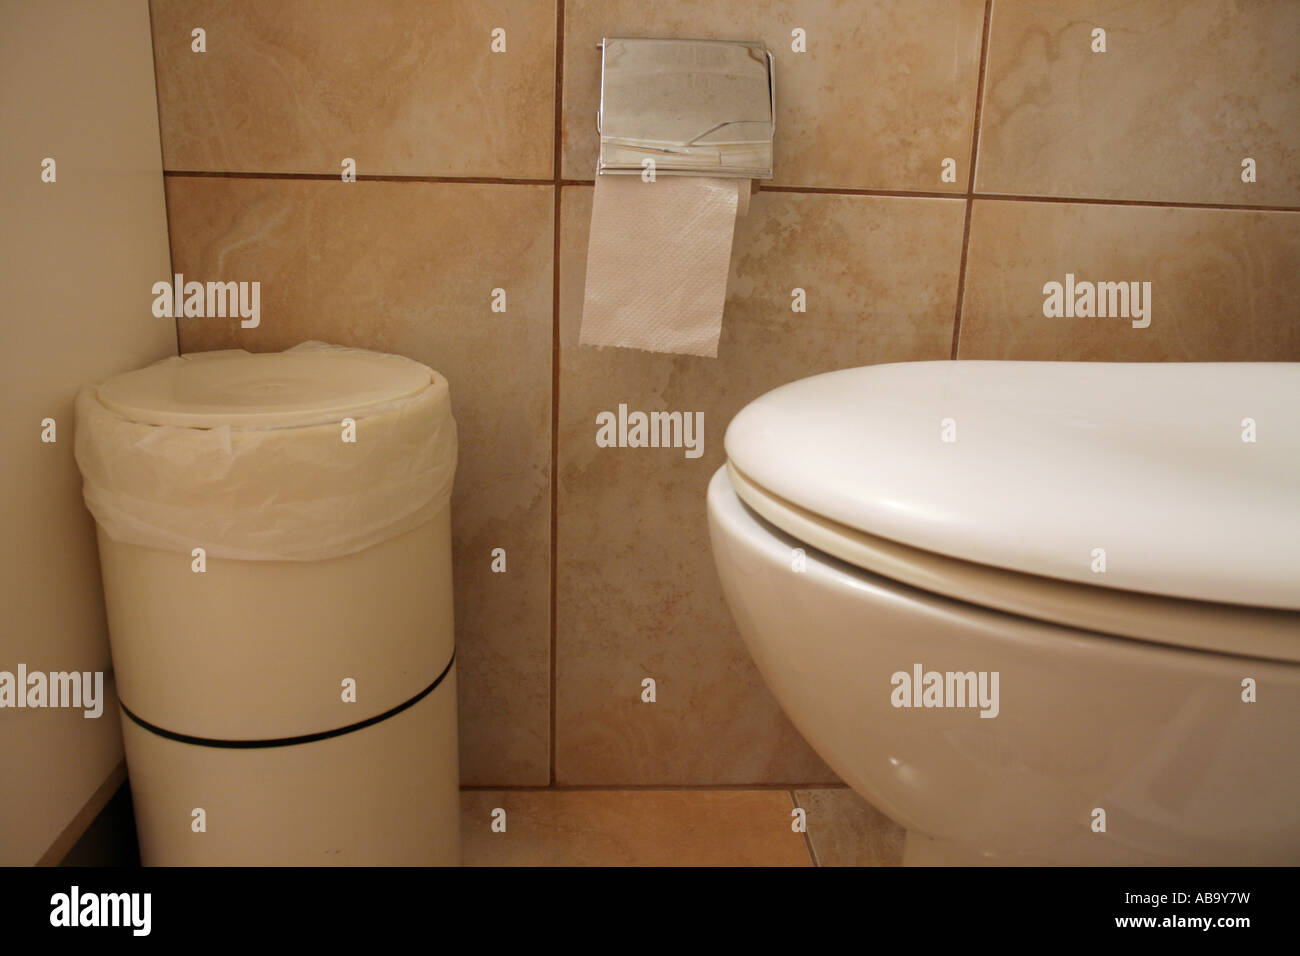 Bac papier toilette utilisé dans de nombreuses îles grecques parce qu'il  faut pas jeter le papier dans la cuvette Photo Stock - Alamy